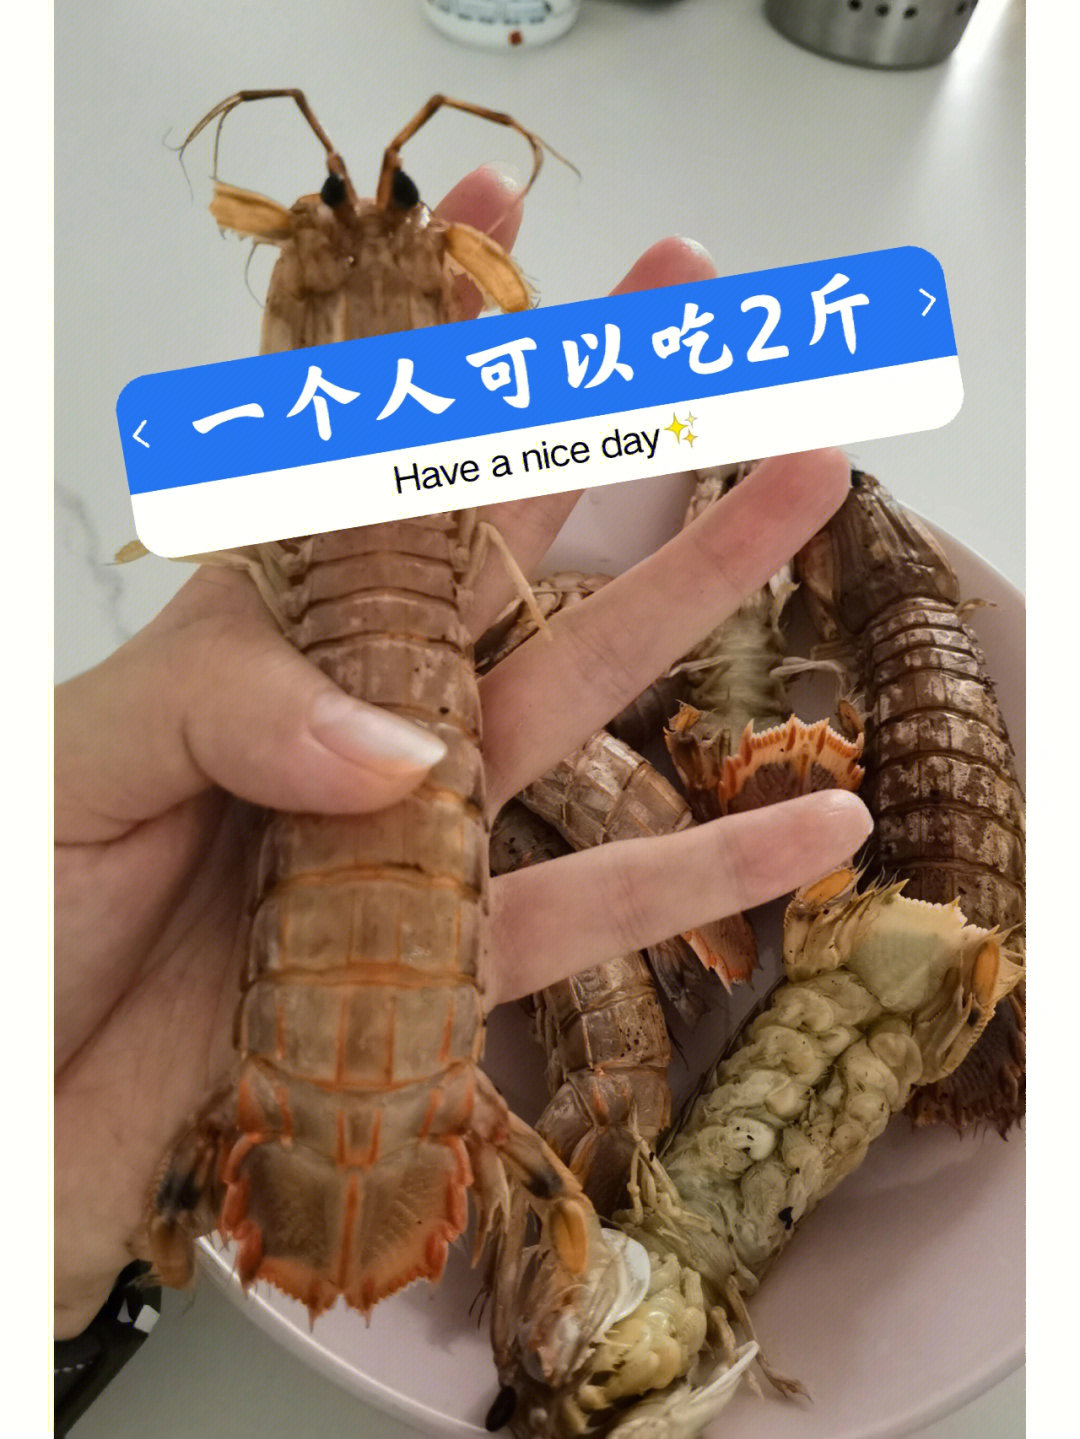 皮皮虾的神仙做法虾爬子极其鲜美